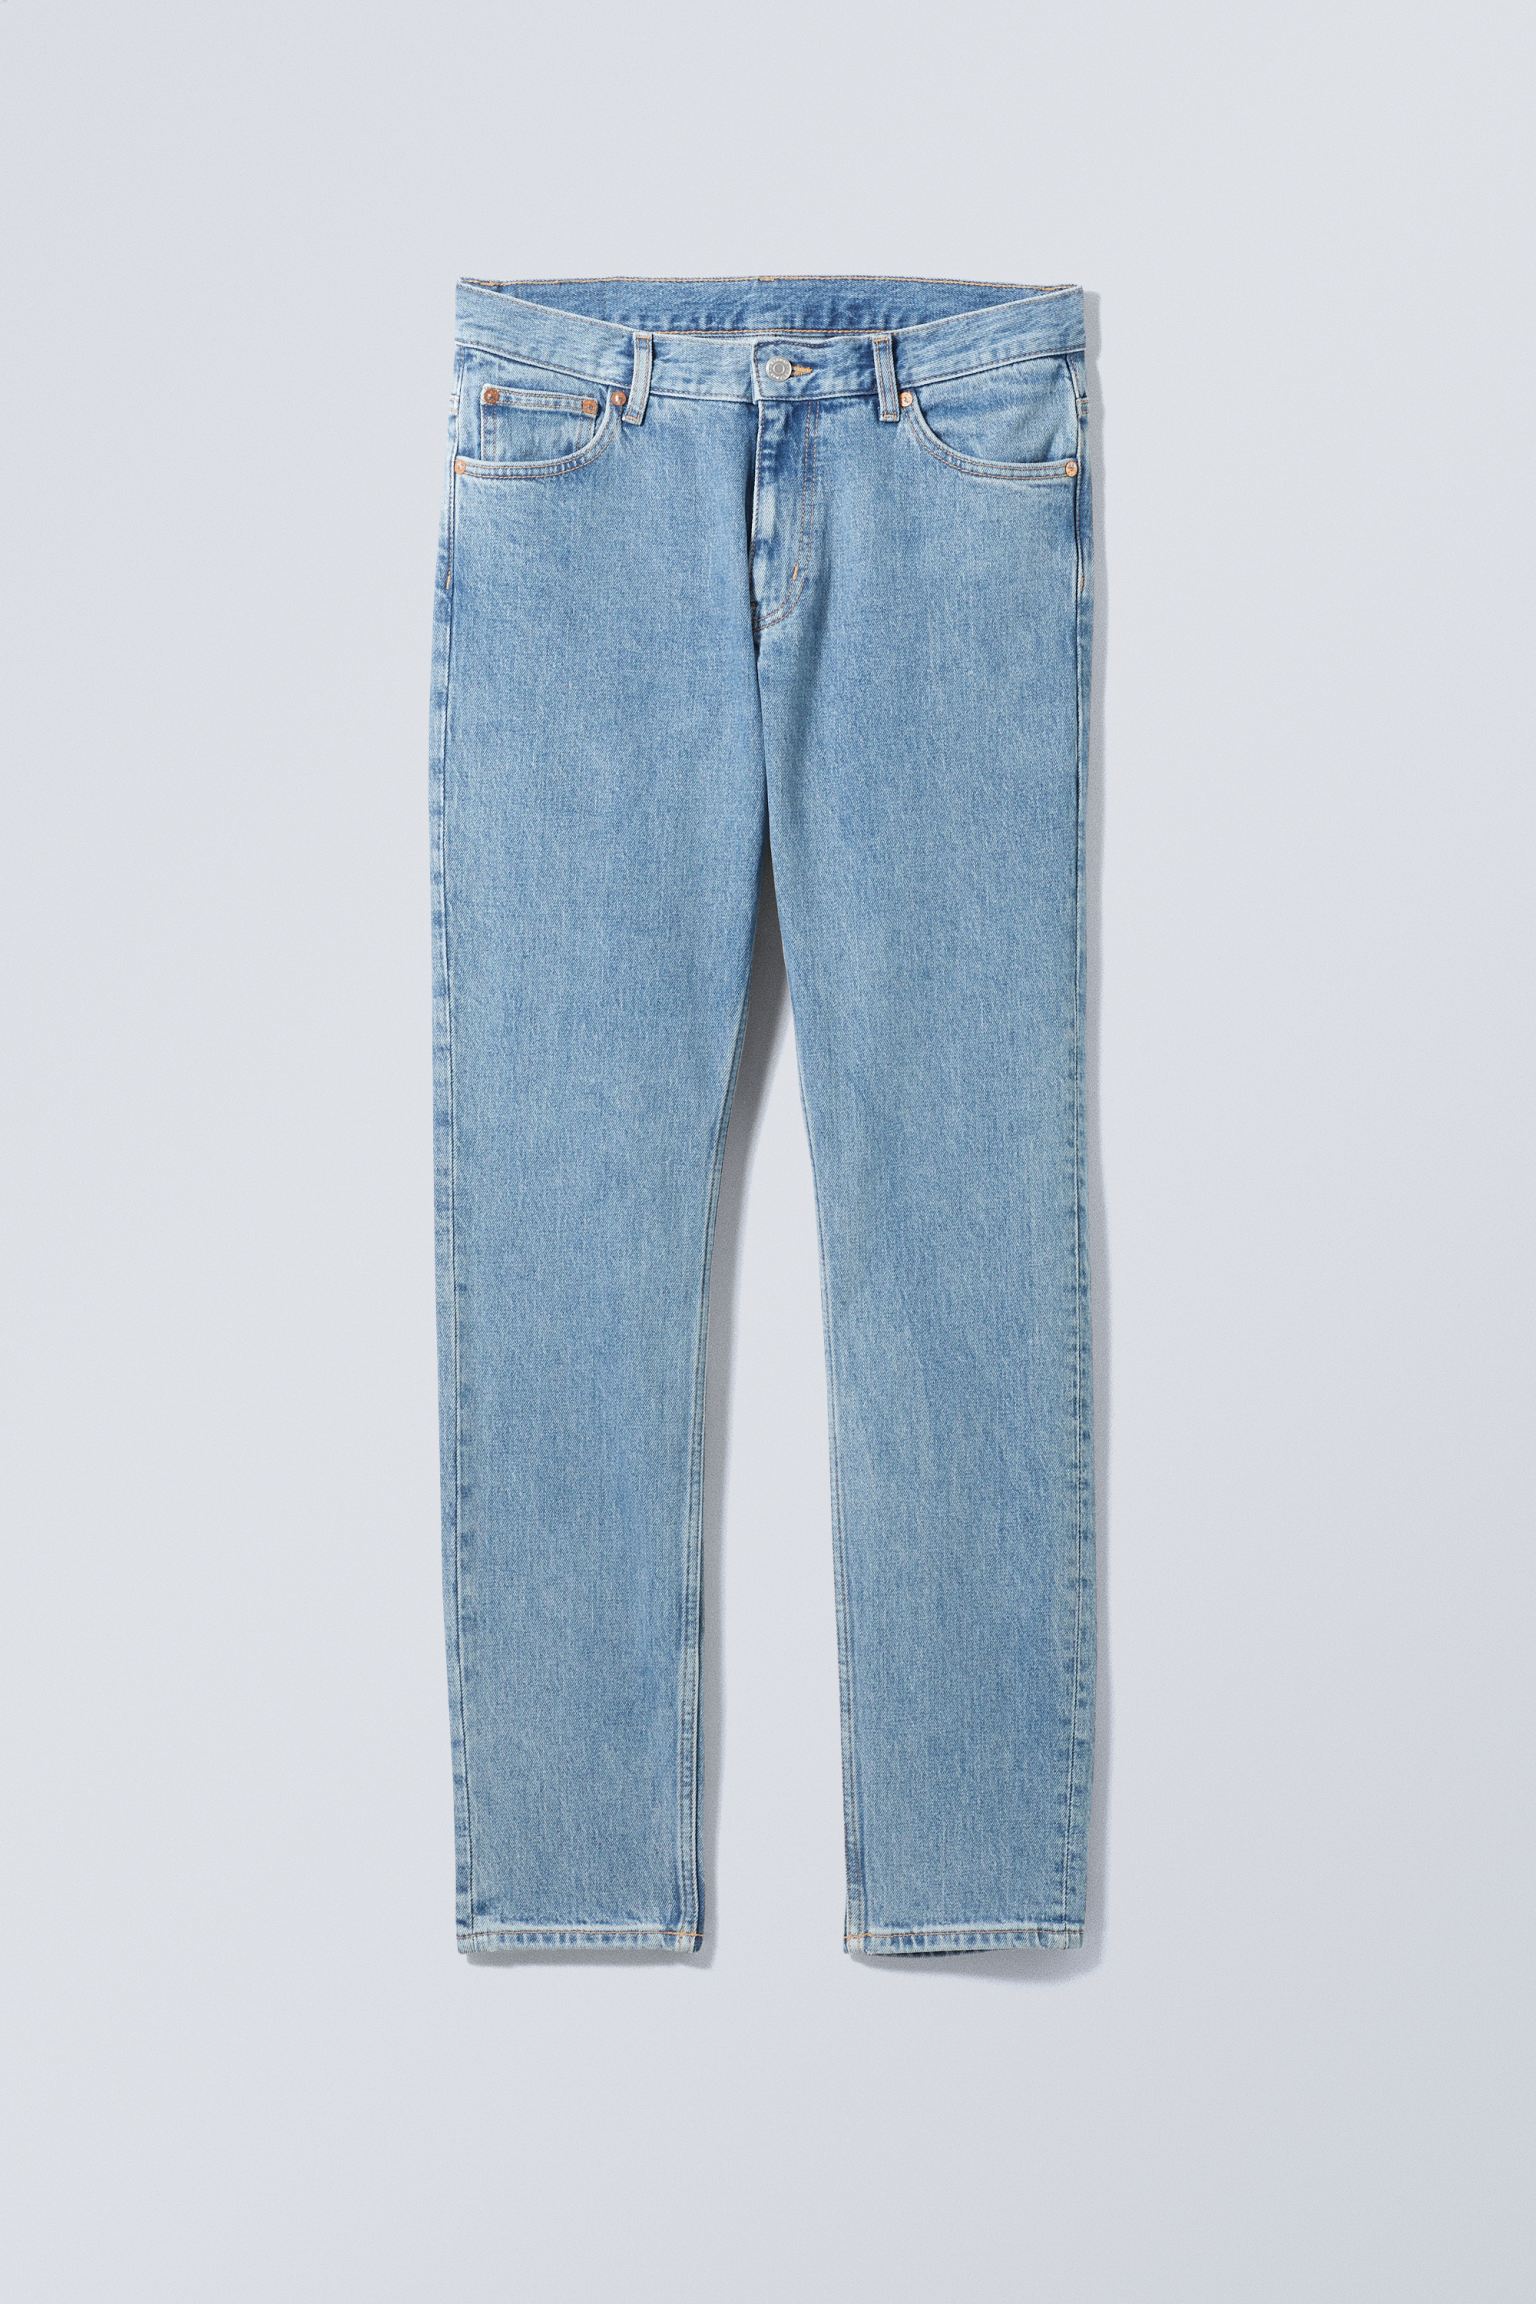 Weekday Schmale Jeans Sunday mit konisch zulaufendem Bein Tiefblau, Skinny in Größe 29/32. Farbe: Cerulean blue von Weekday